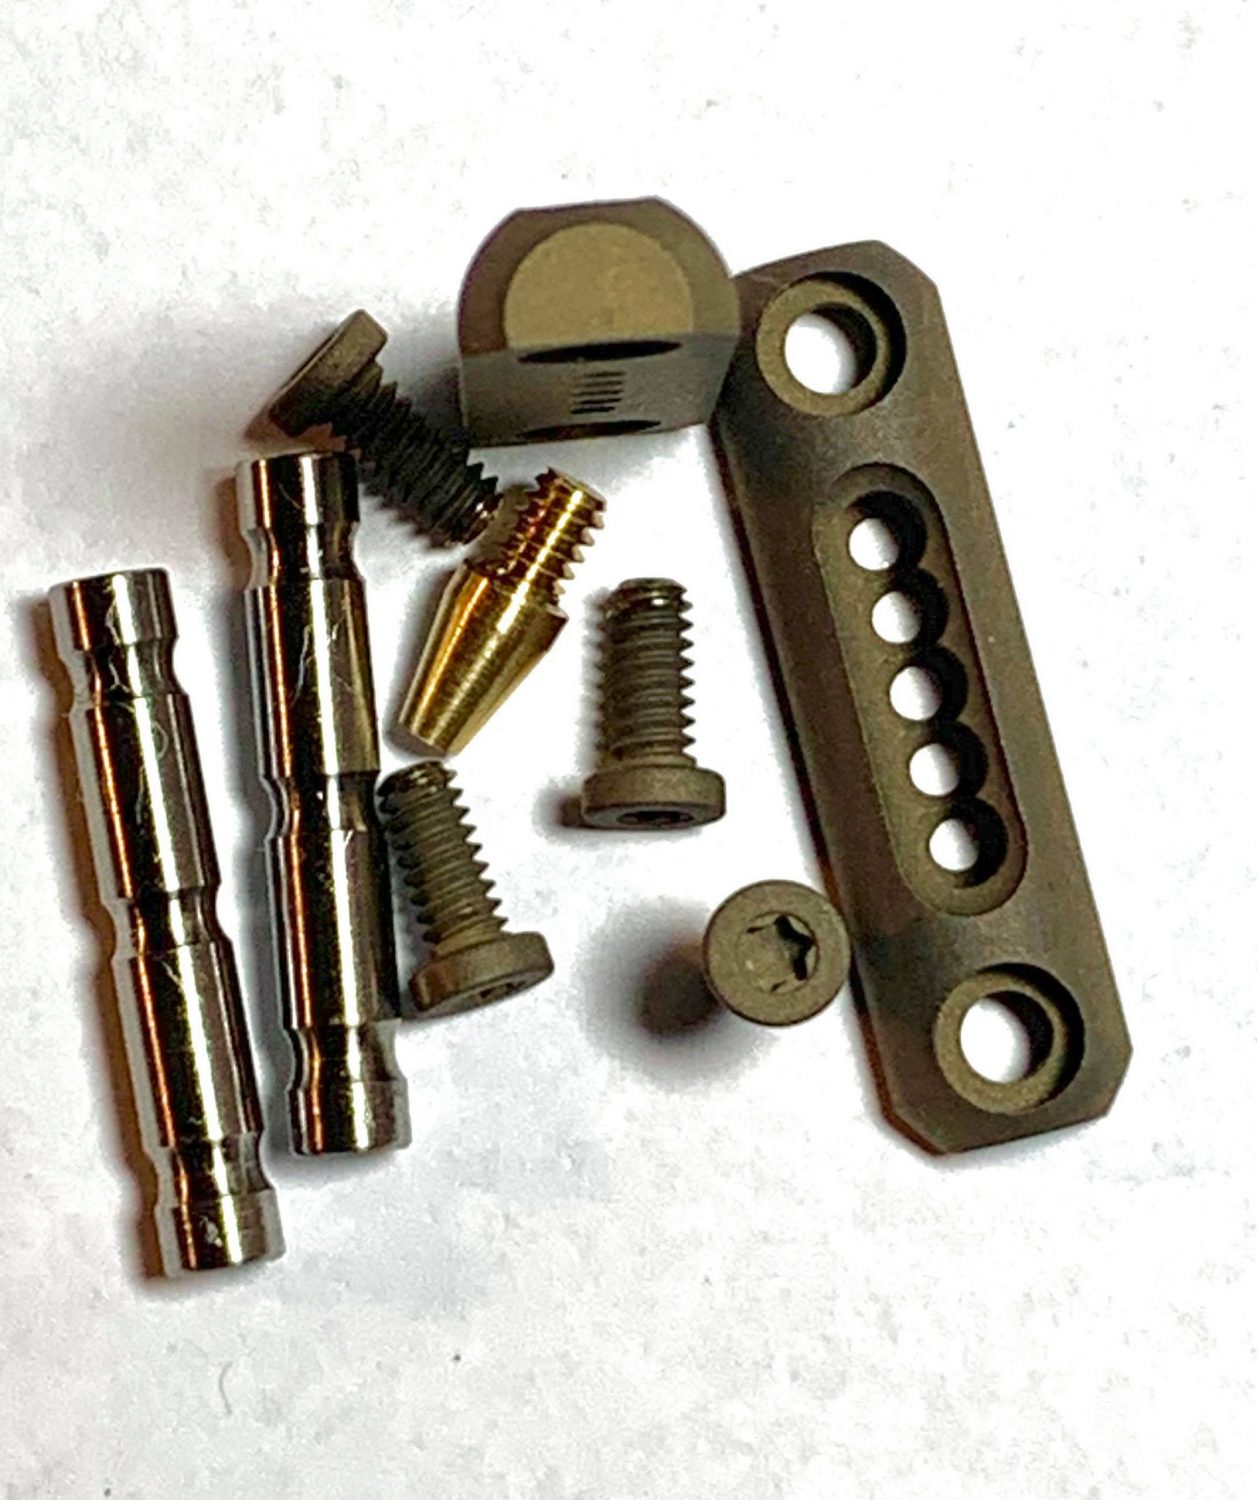 AR15/10 Anti-Walk Pin Sets